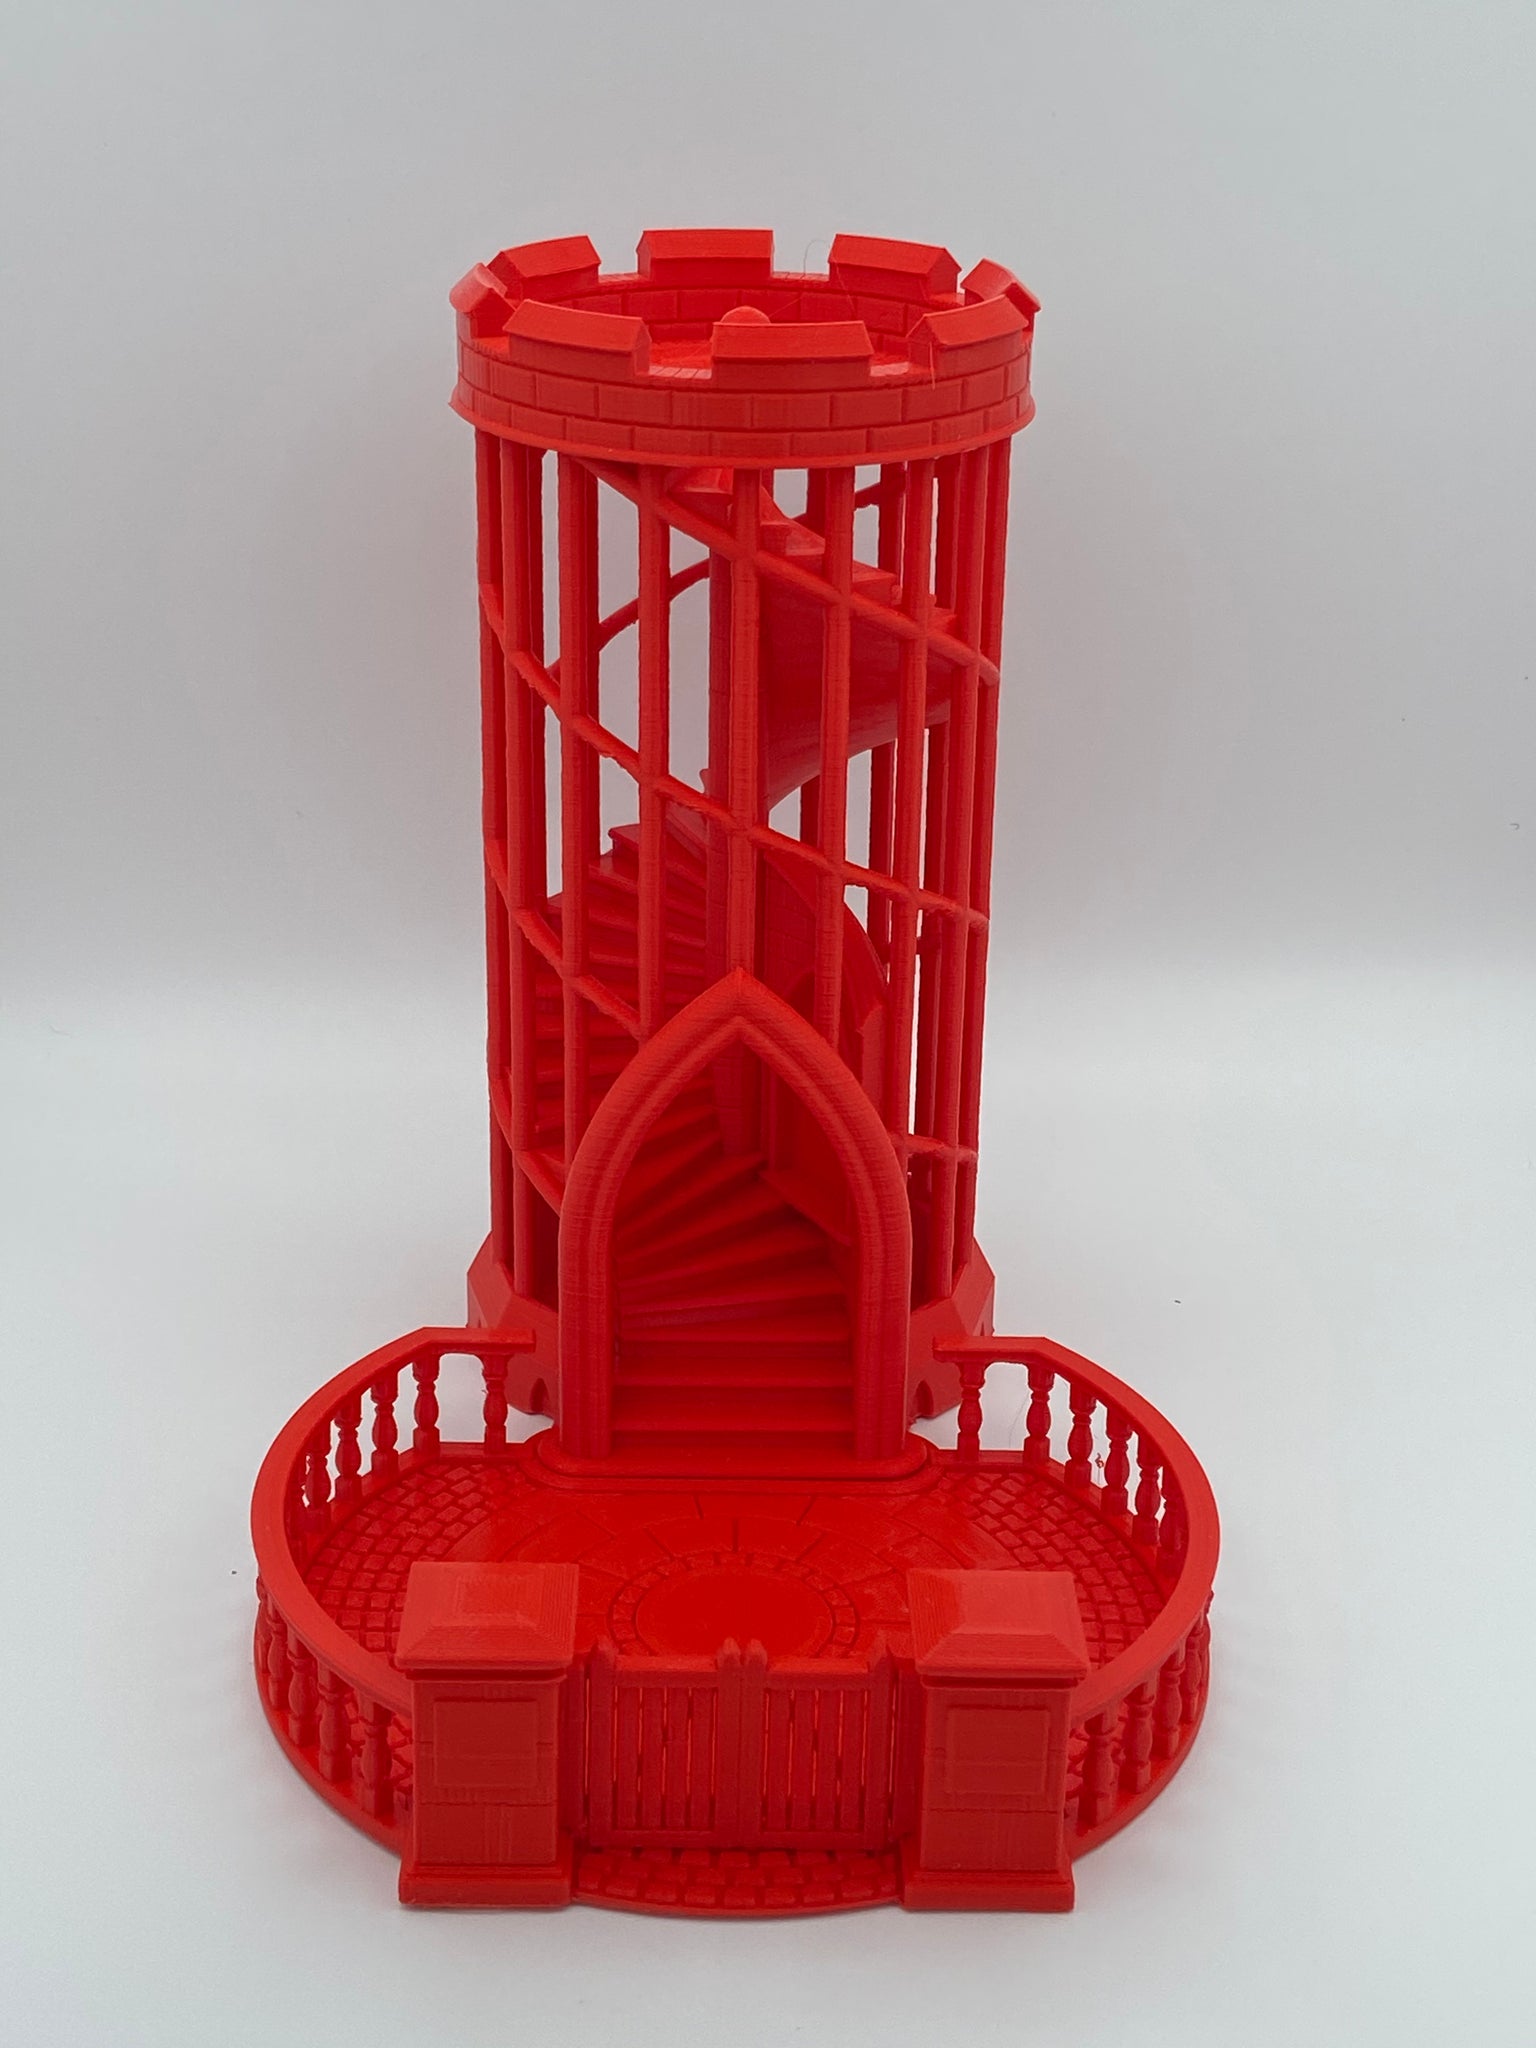 ægteskab nedenunder scrapbog Dice Tower 3D Printed – The Creative Heart Warrior